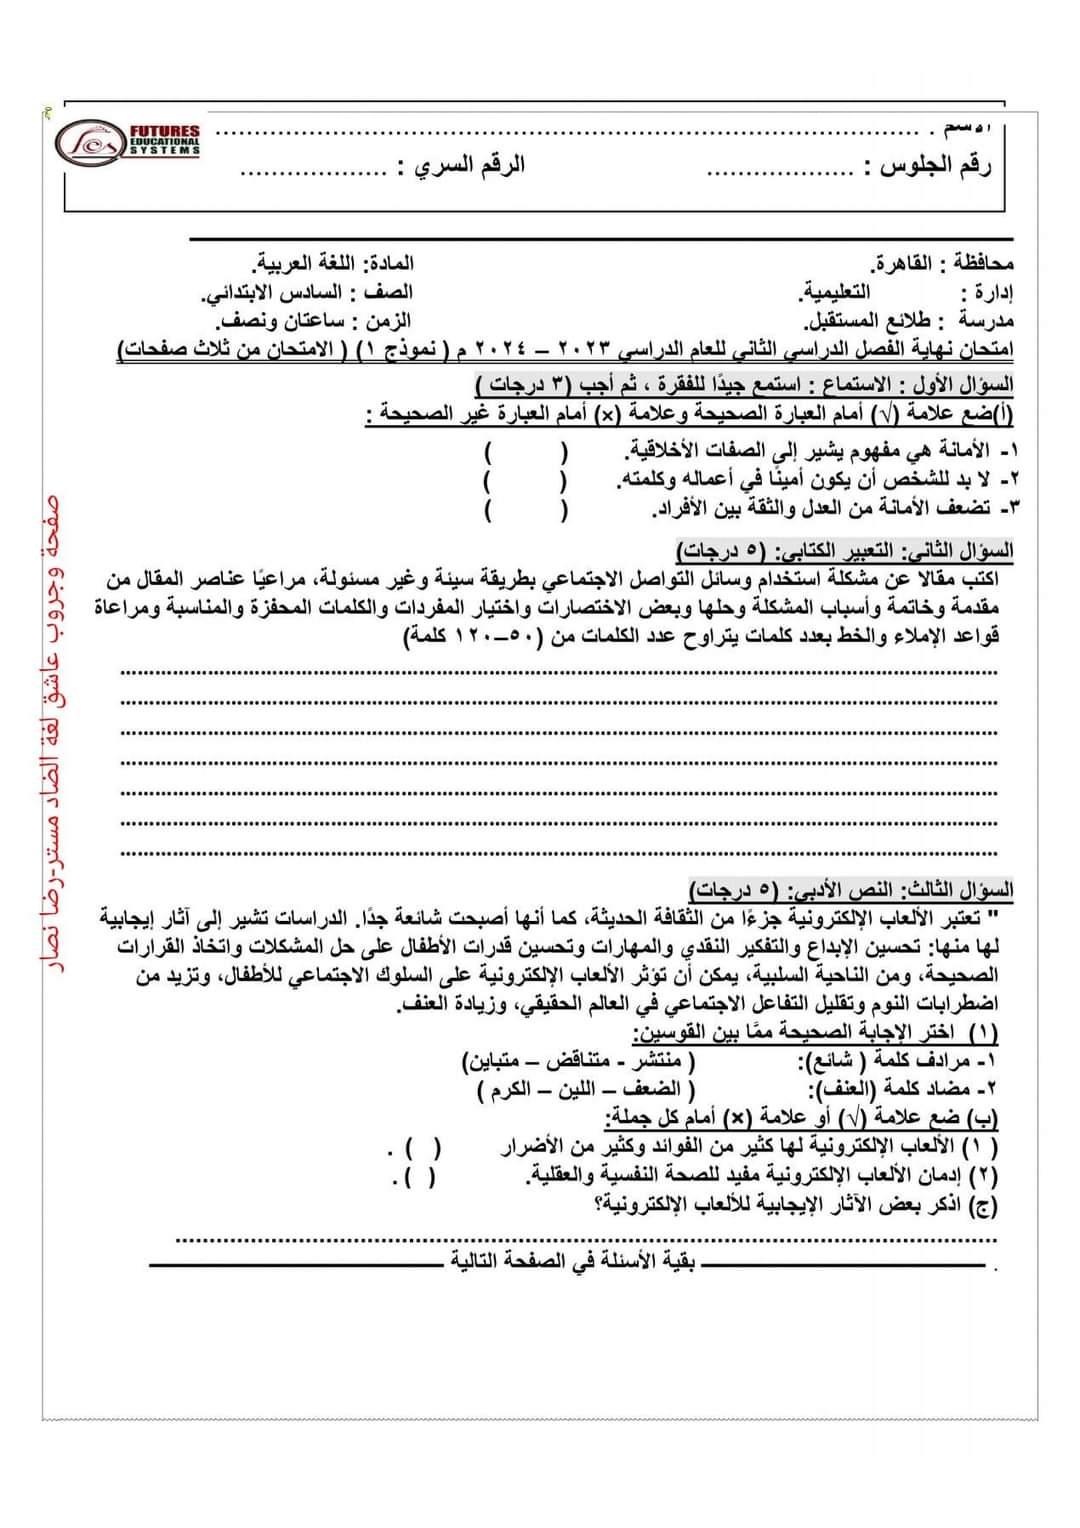 نماذج استرشادية في اللغة العربية والتربية الإسلامية للصفوف الرابع والخامس والسادس الابتدائي الترم الثاني